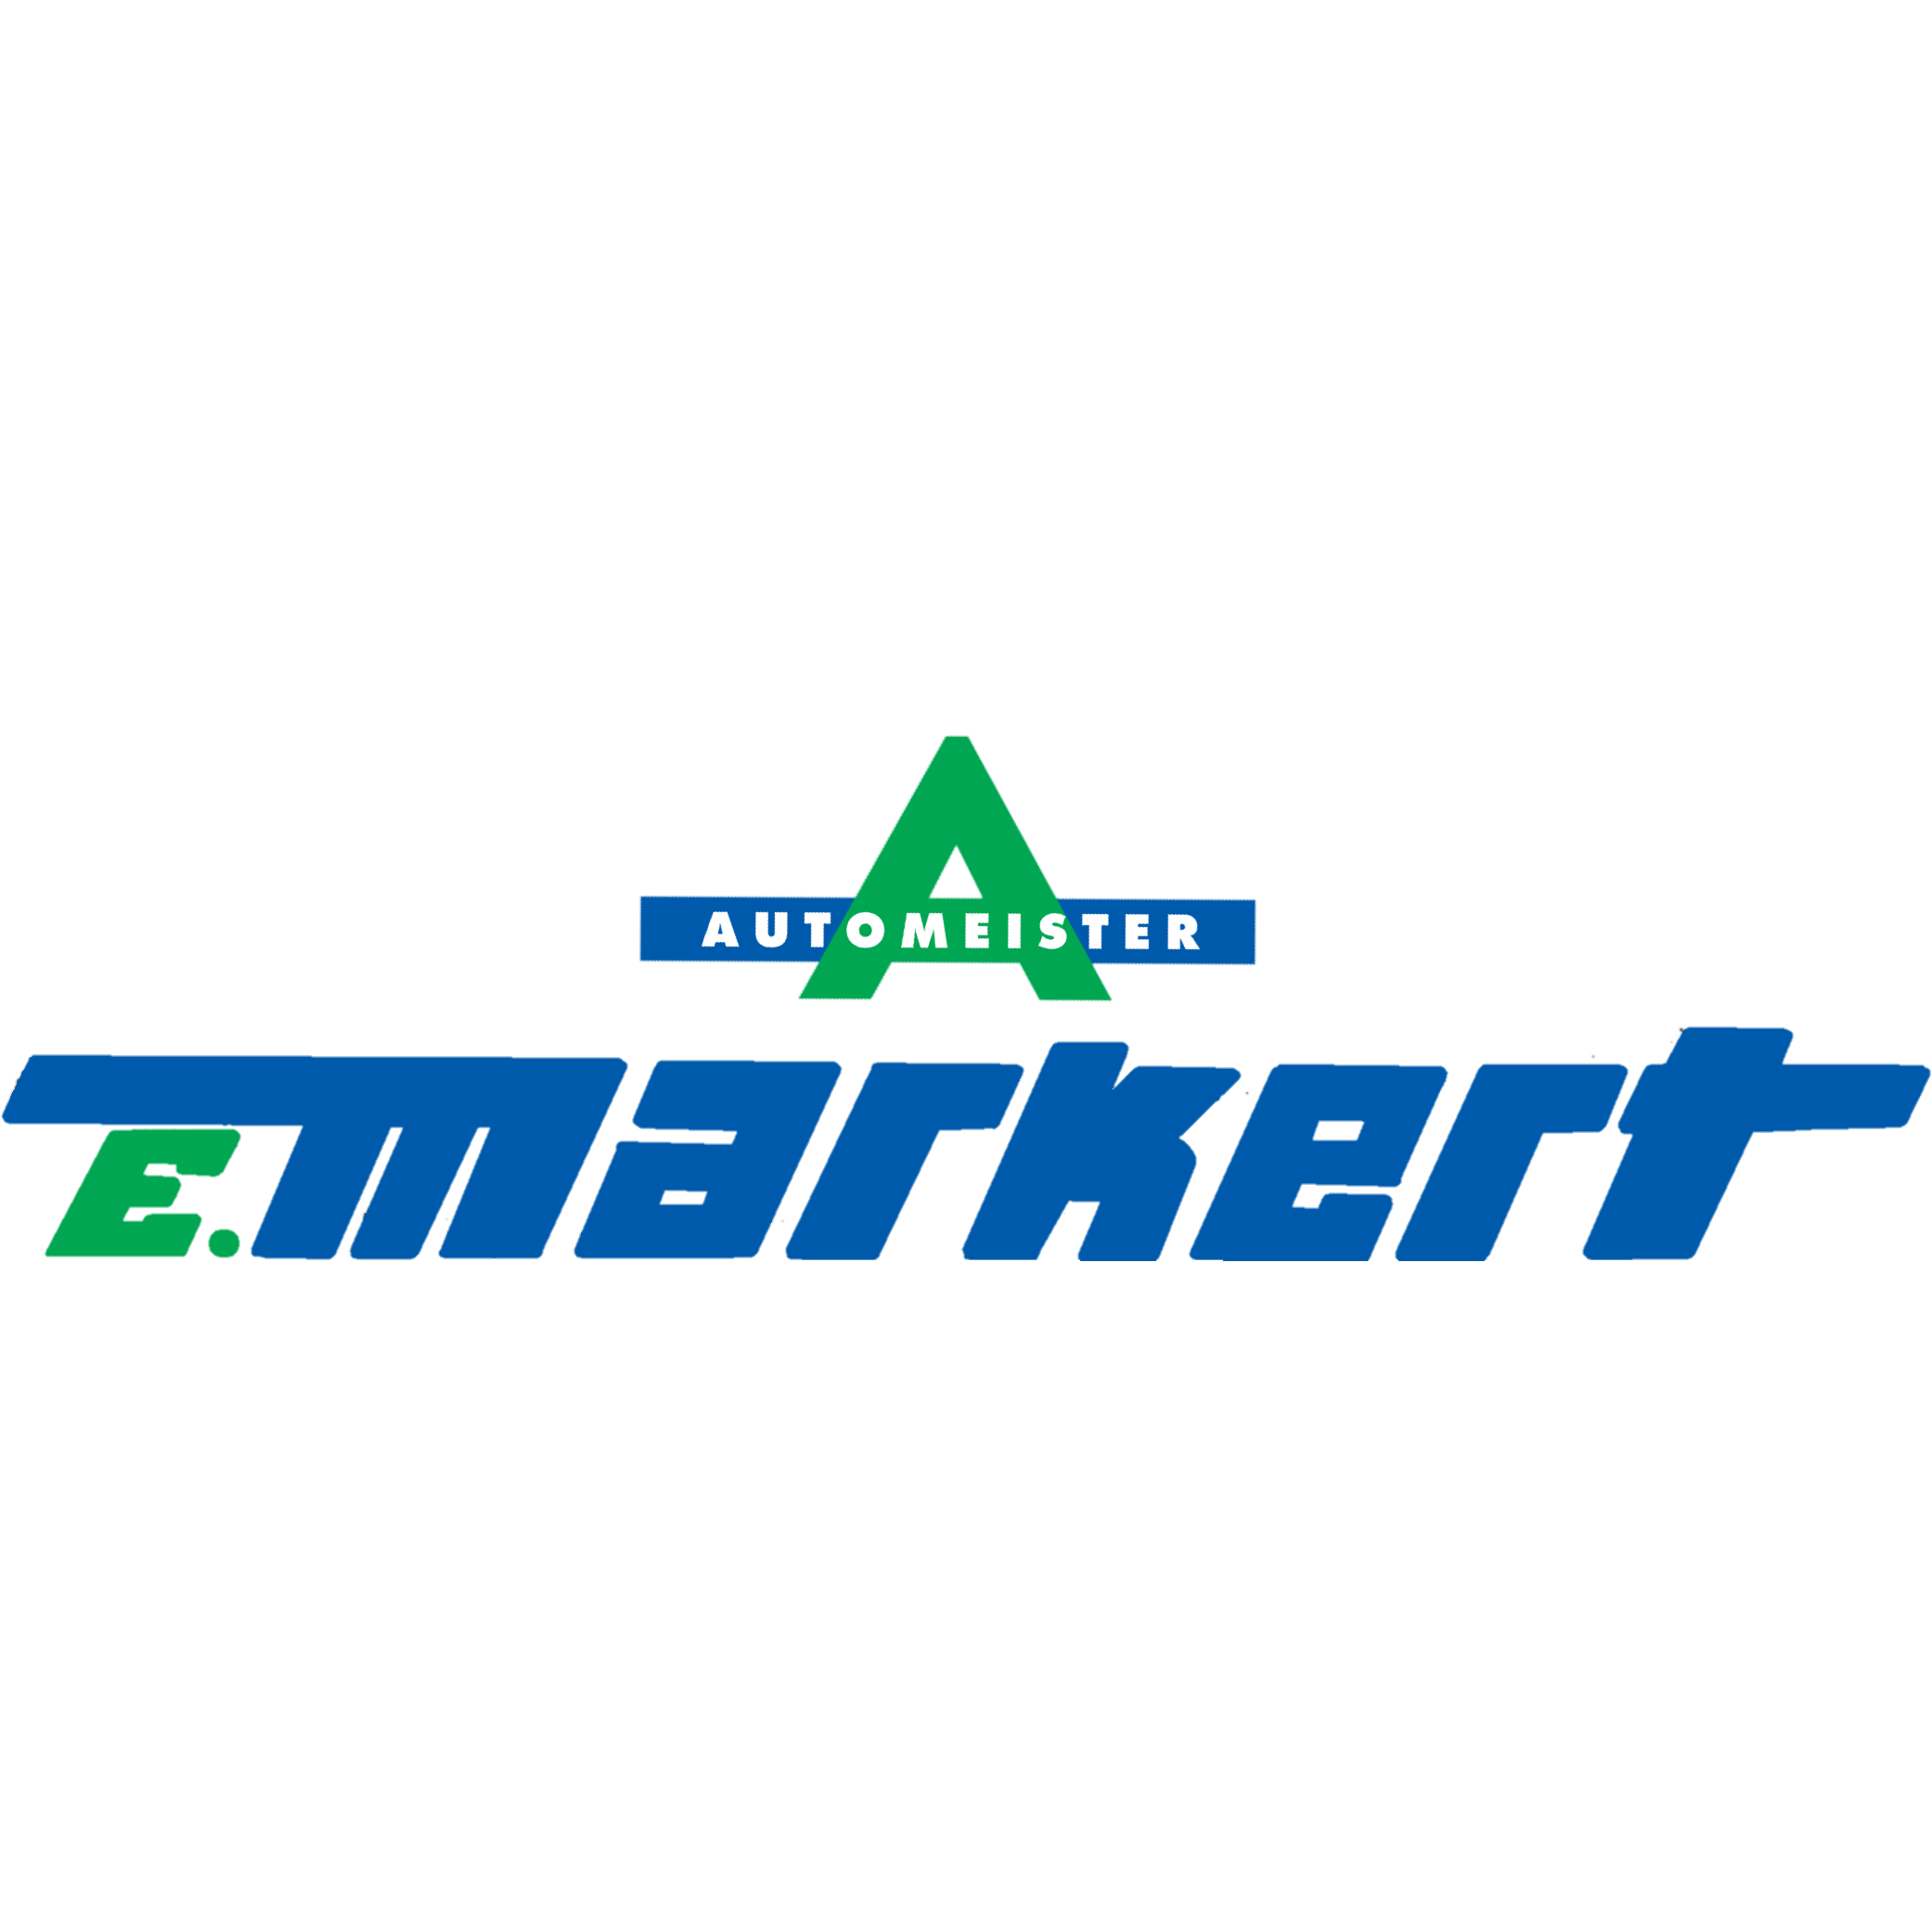 AUTOMEISTER E. Markert in Schweinfurt - Logo